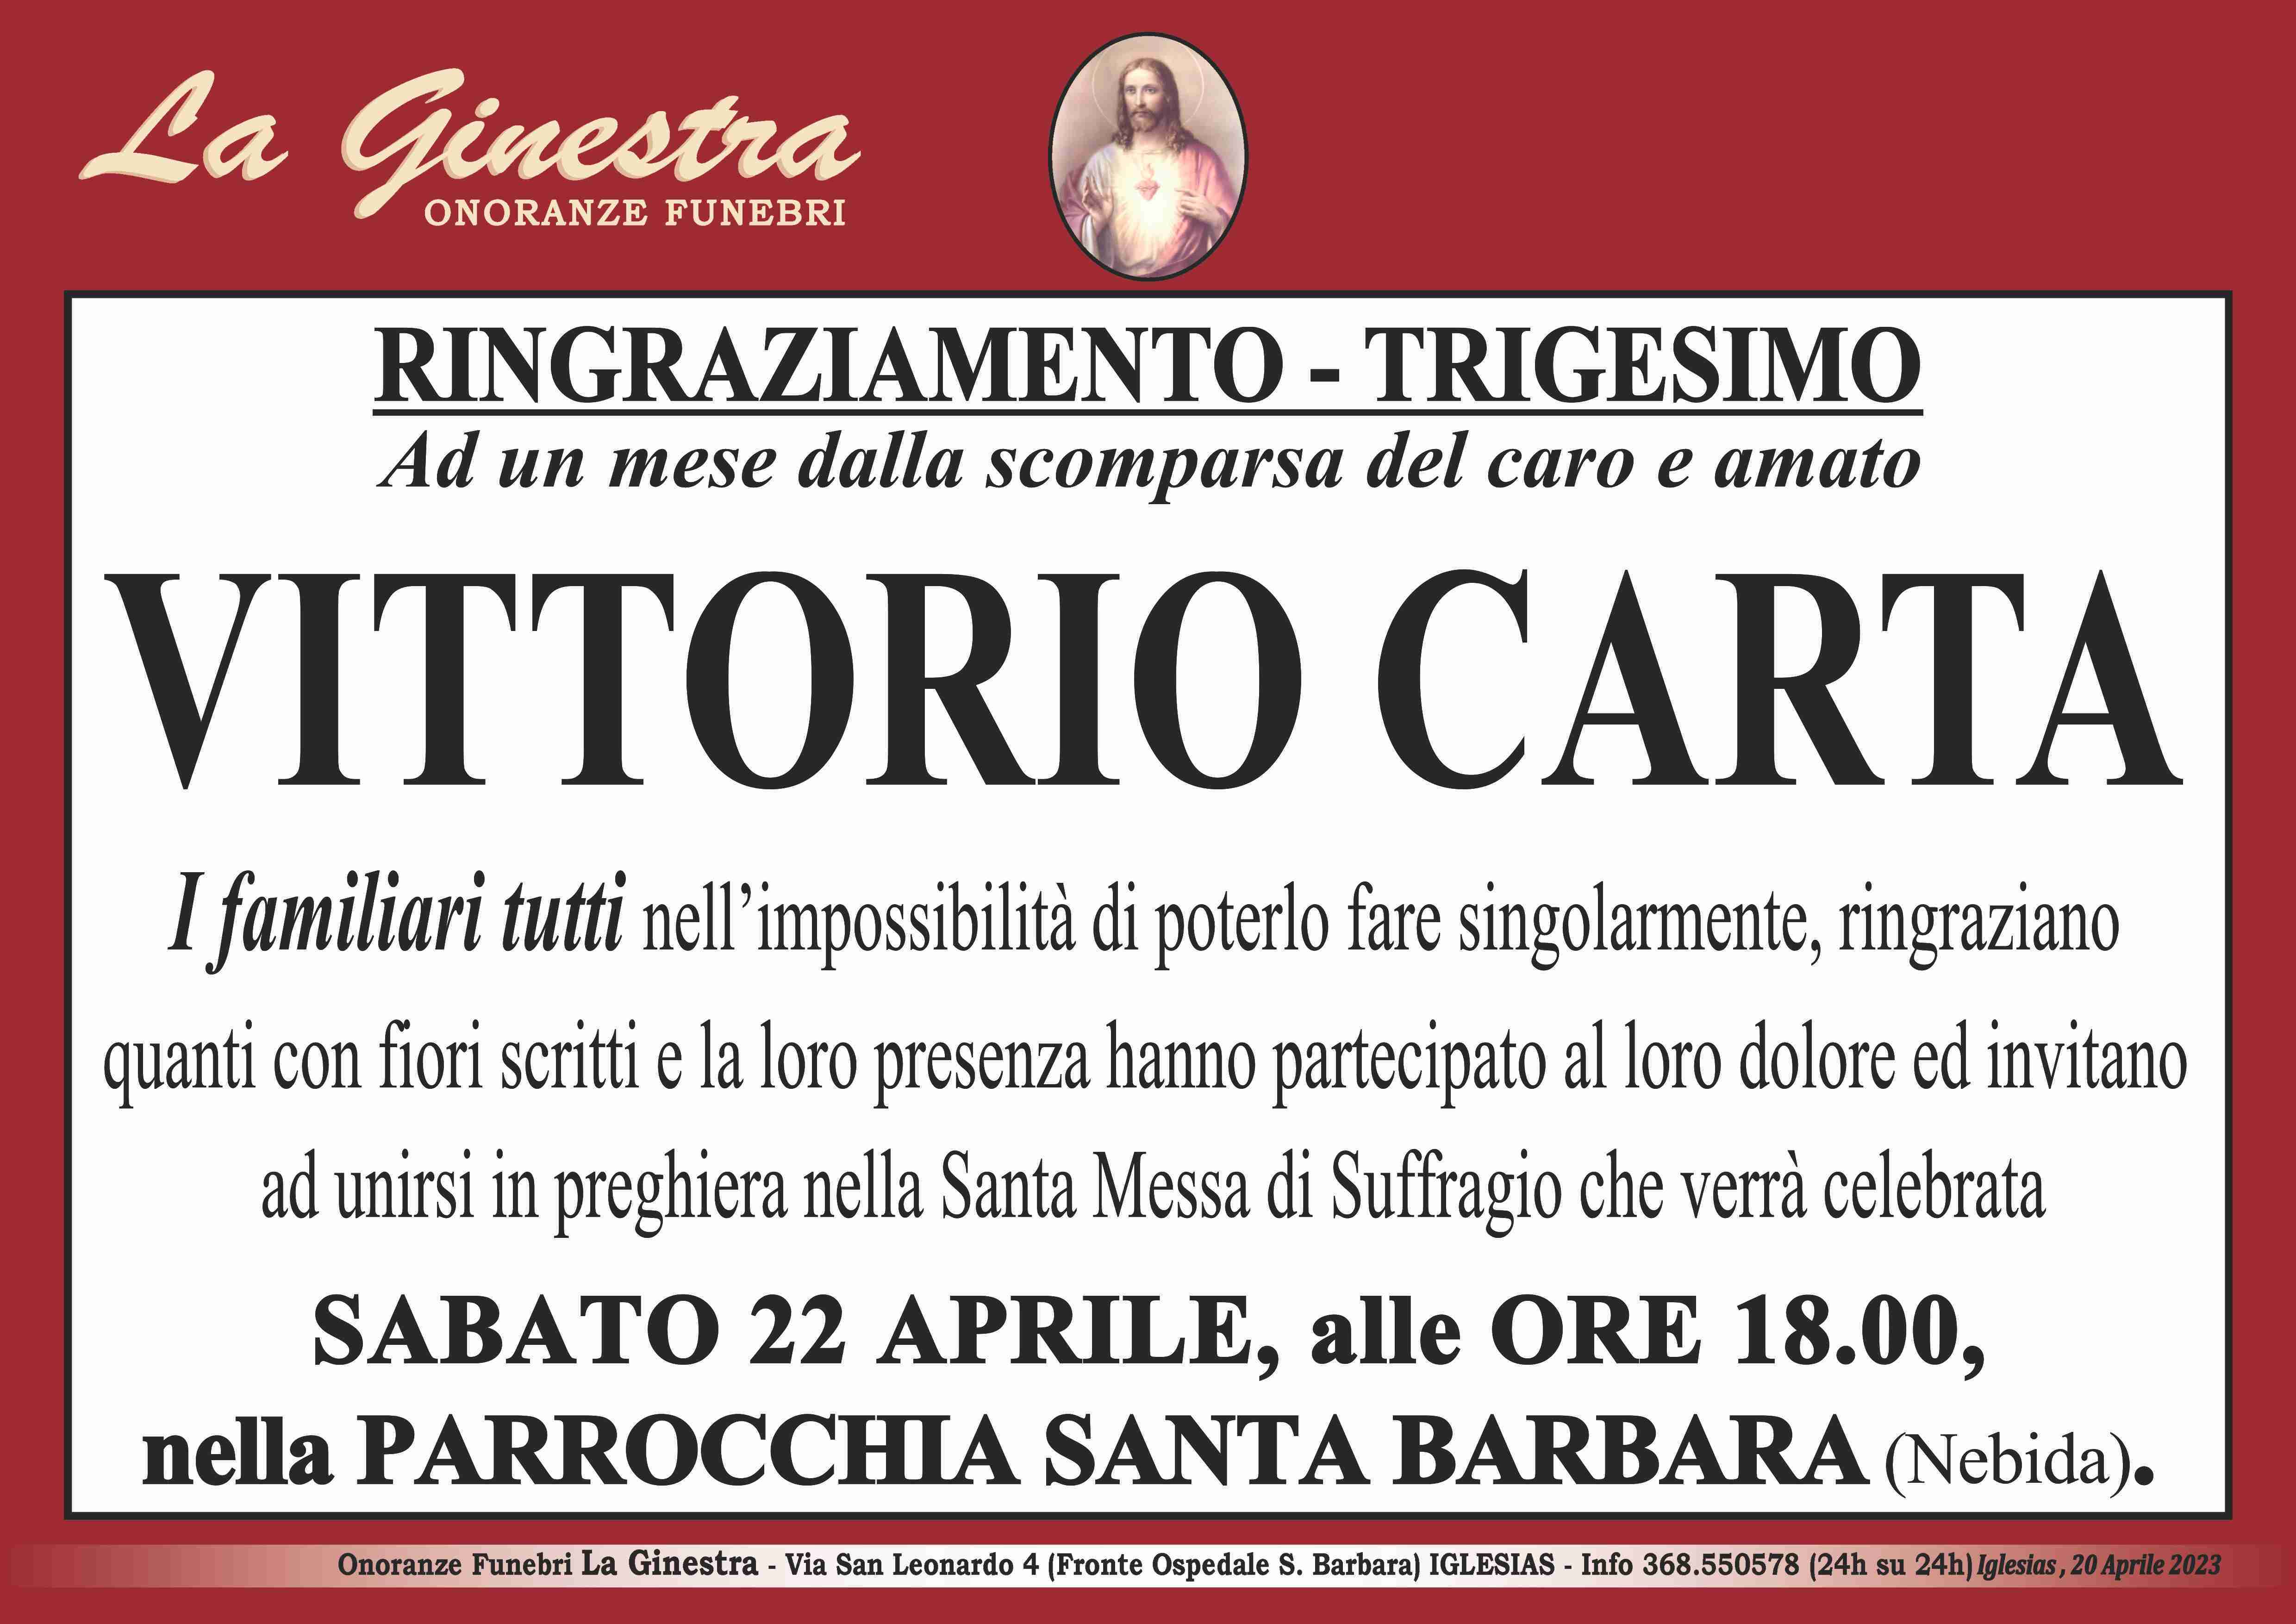 Vittorio Carta